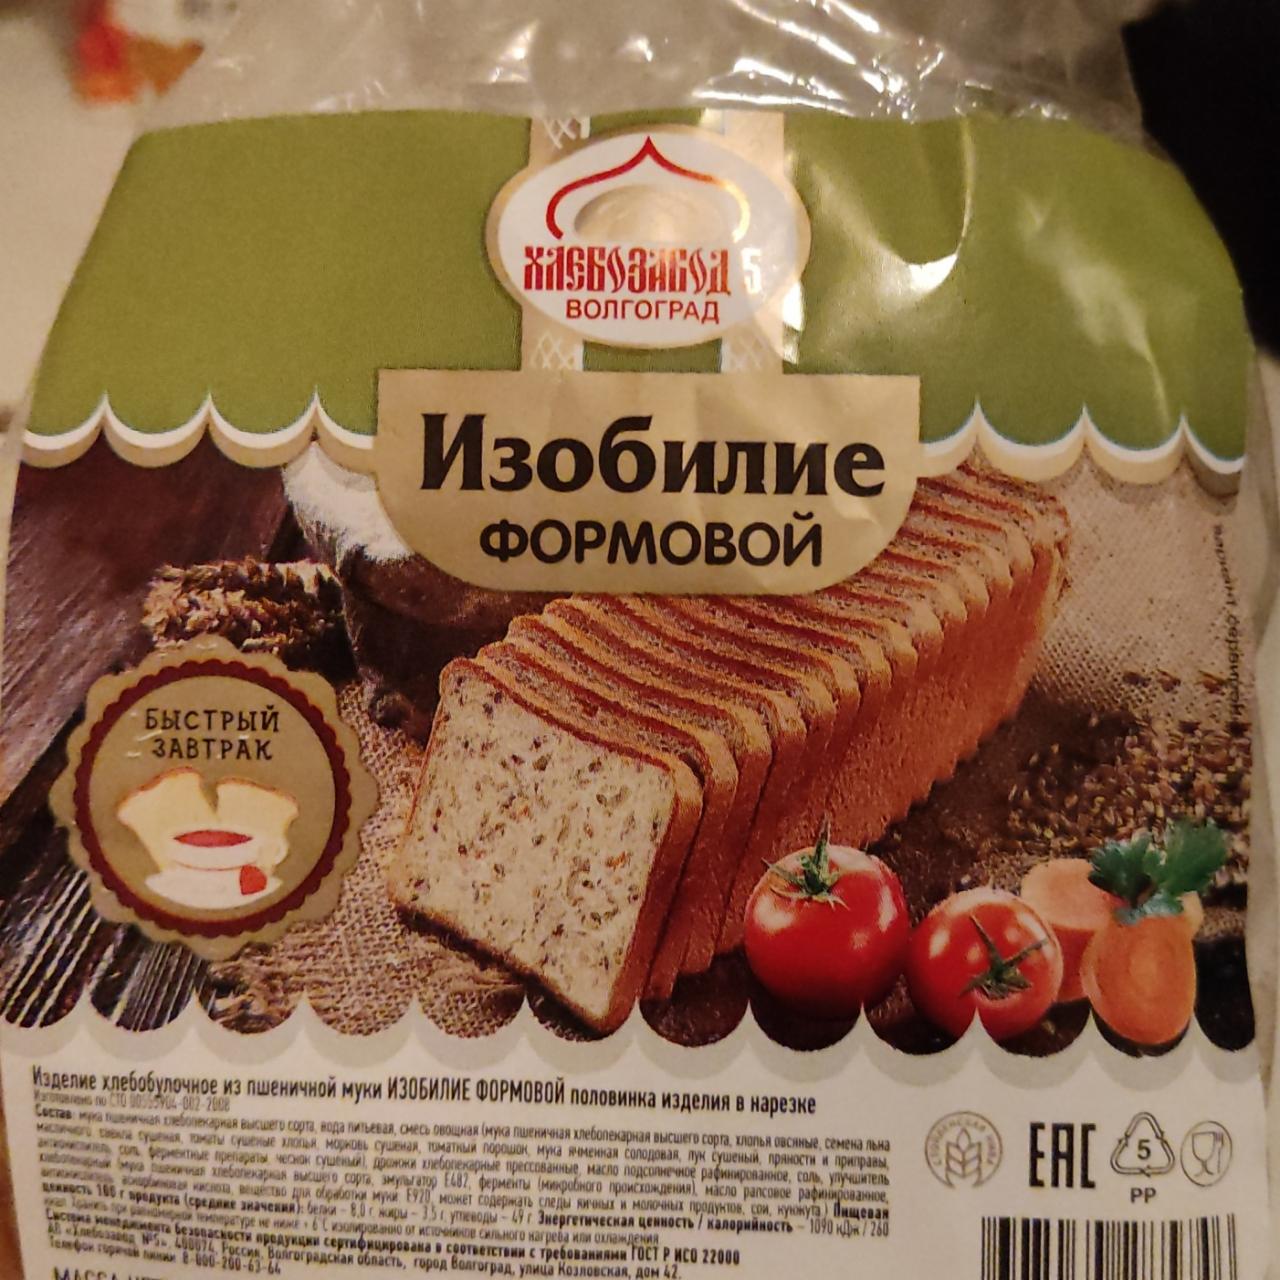 Фото - хлеб формовой изобилие Хлебозавод №5 Волгоград